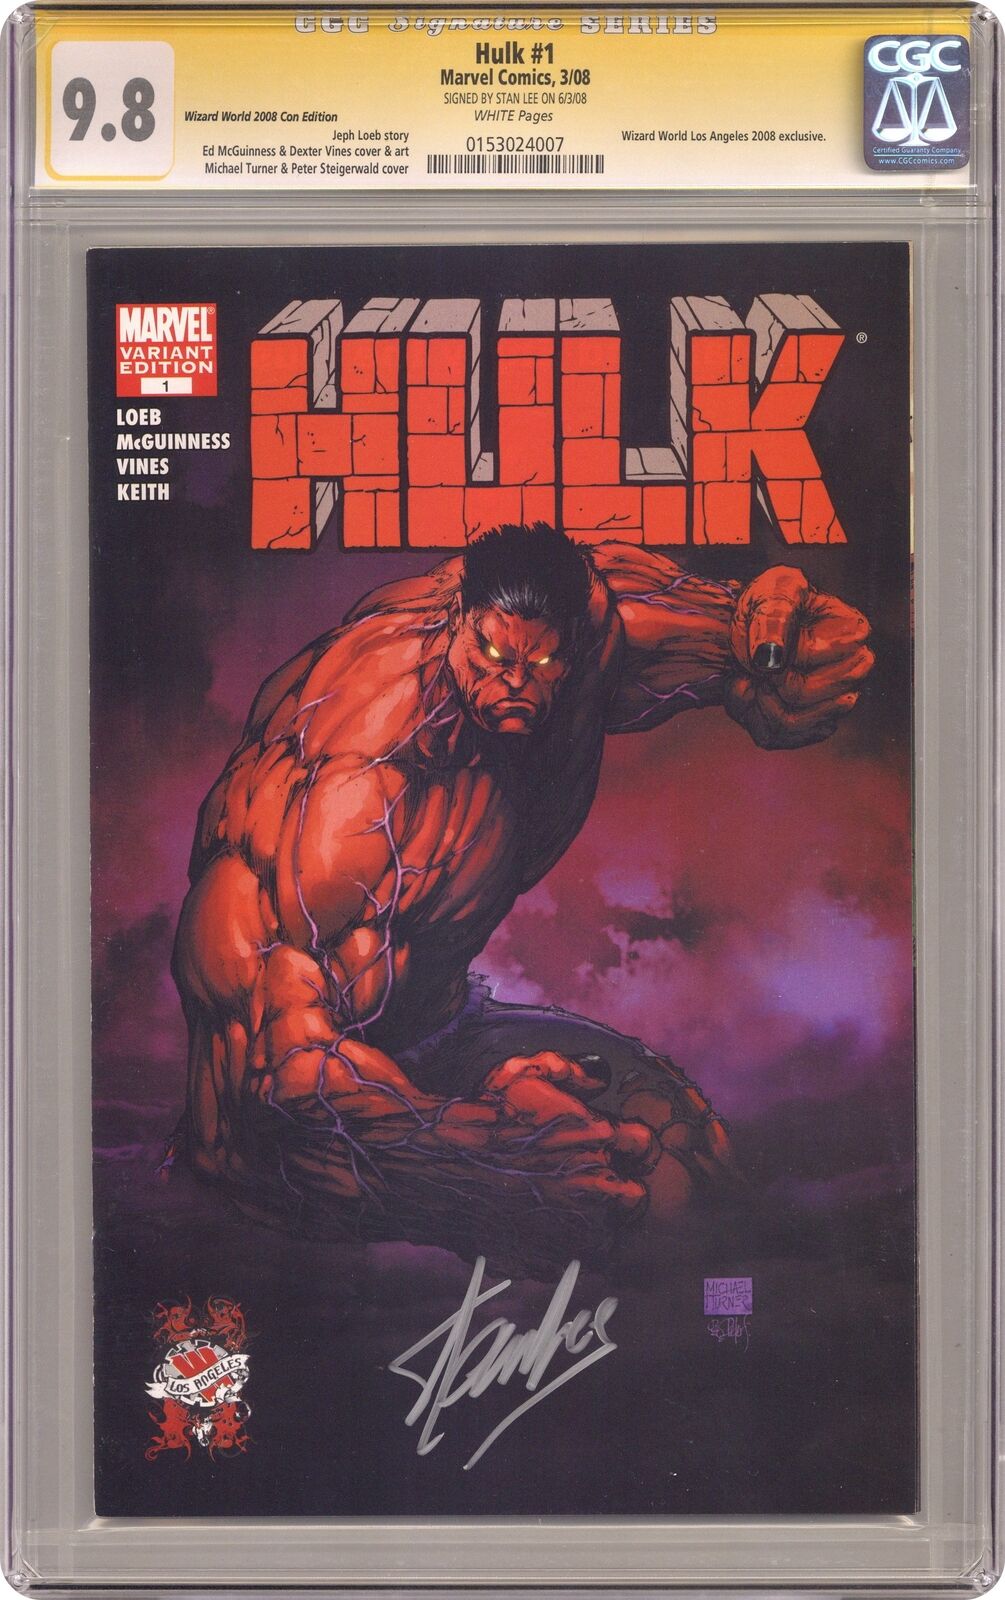 Hulk #1 Turner WW LA Variant CGC 9.8 SS Lee 2008 0153024007